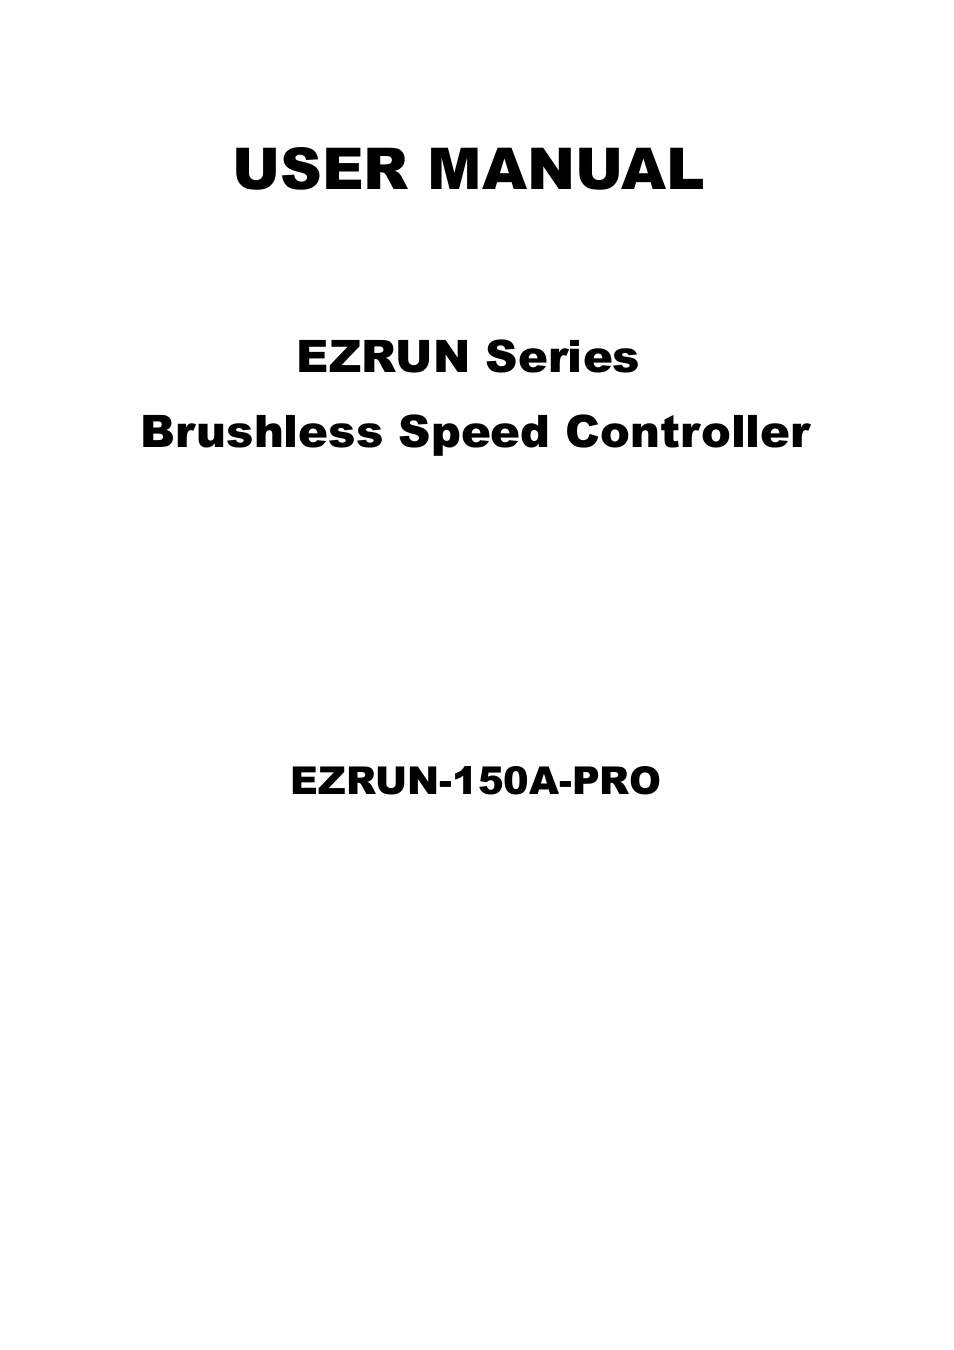 EZRUN-150A-PRO